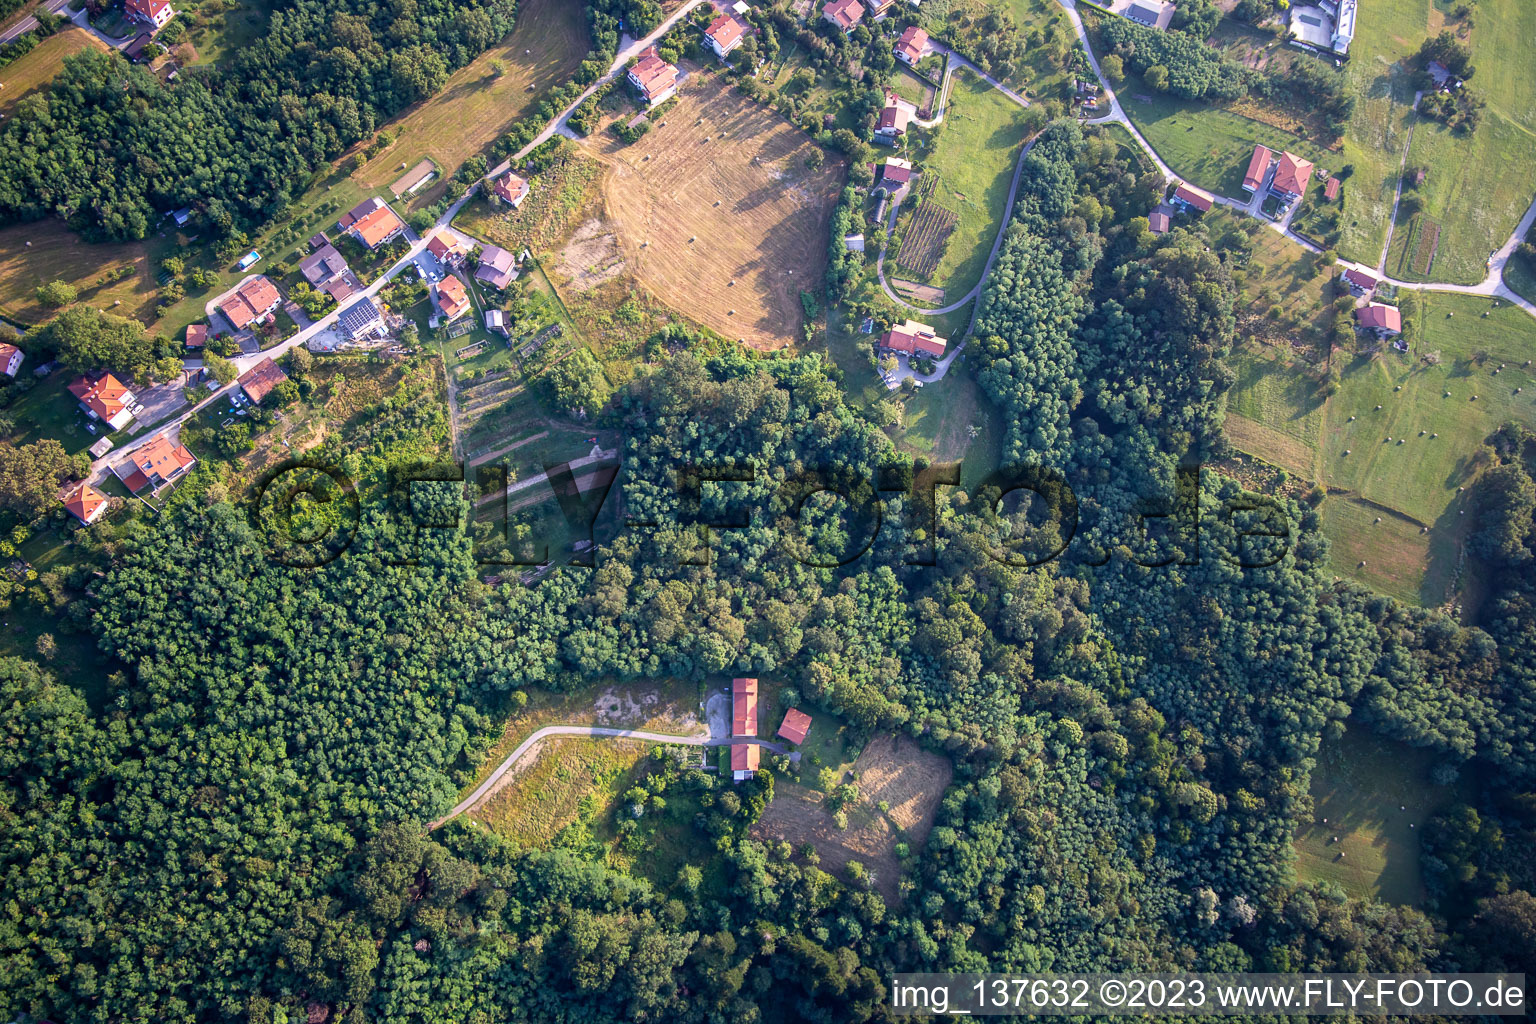 Luftbild von Ortsteil Rosenthal in Nova Gorica, Slowenien